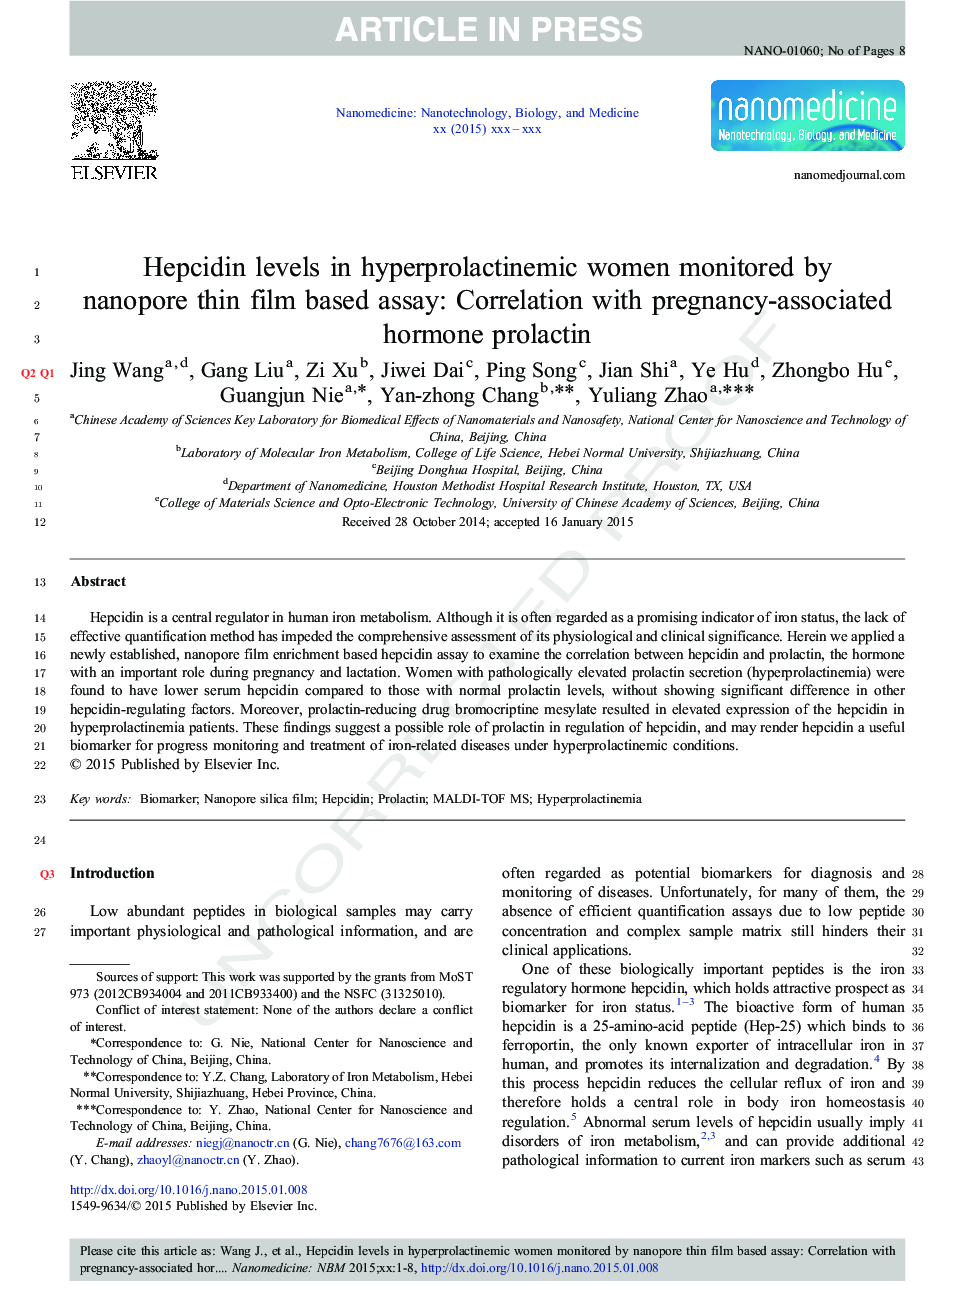 سطوح هپسیدین در زنان هیپرپرولاکتینمی تحت بررسی با استفاده از روش نانوپور نازک بر پایه آزمایش: همبستگی با هورمون پرولاکتین مرتبط با بارداری 